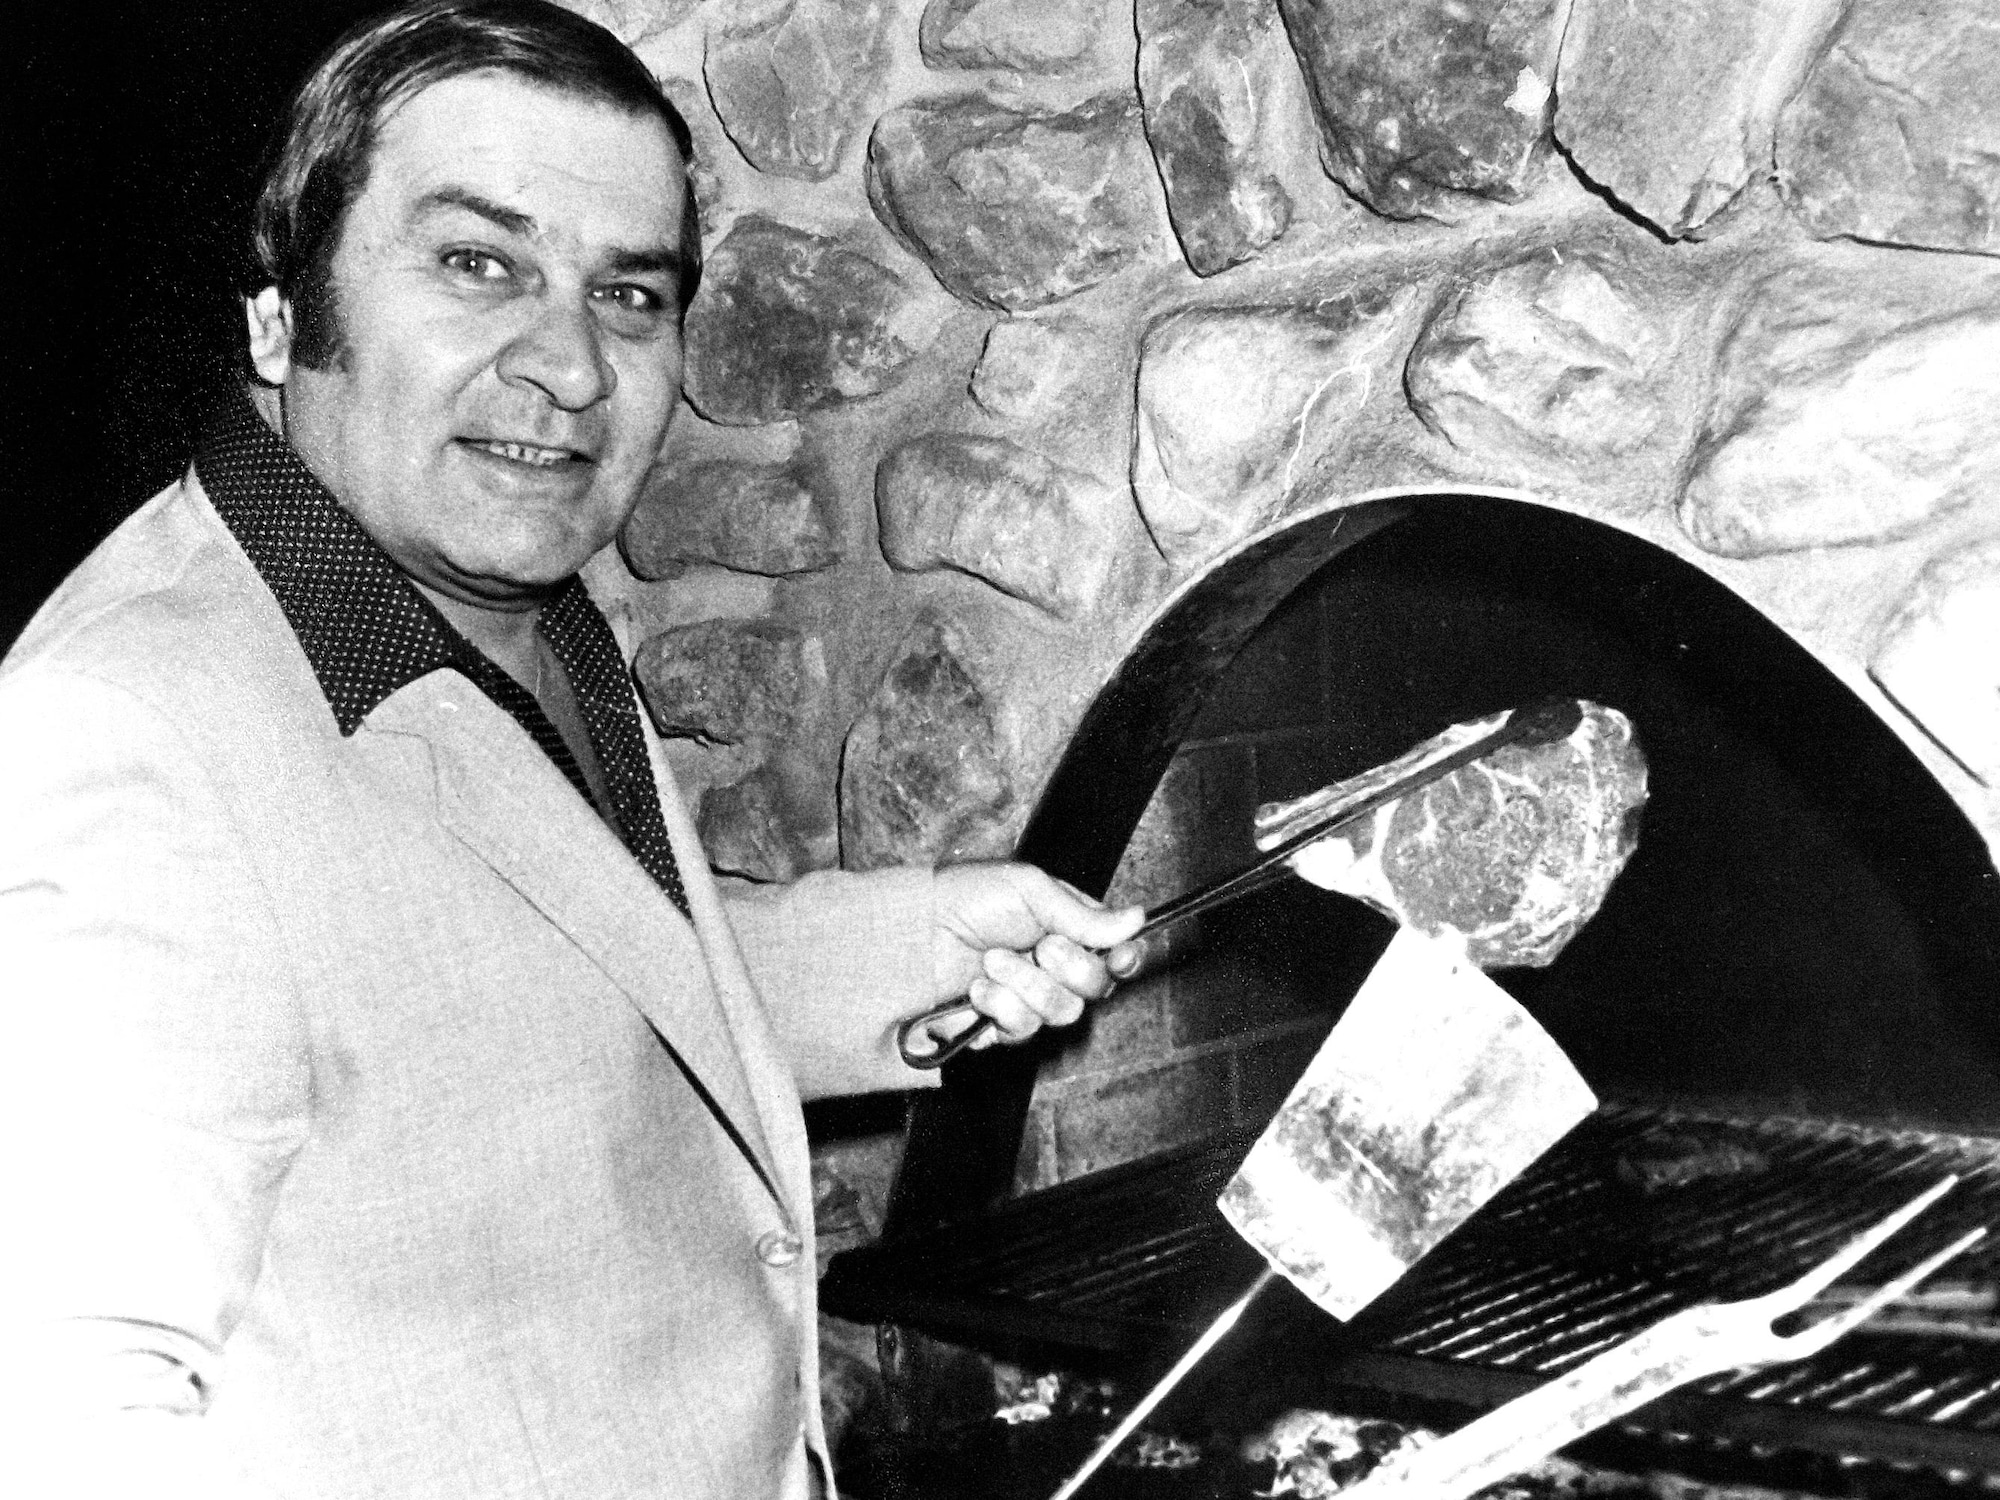 Régis Lévesque s'apprête à mettre un steak sur le grill de son restaurant.